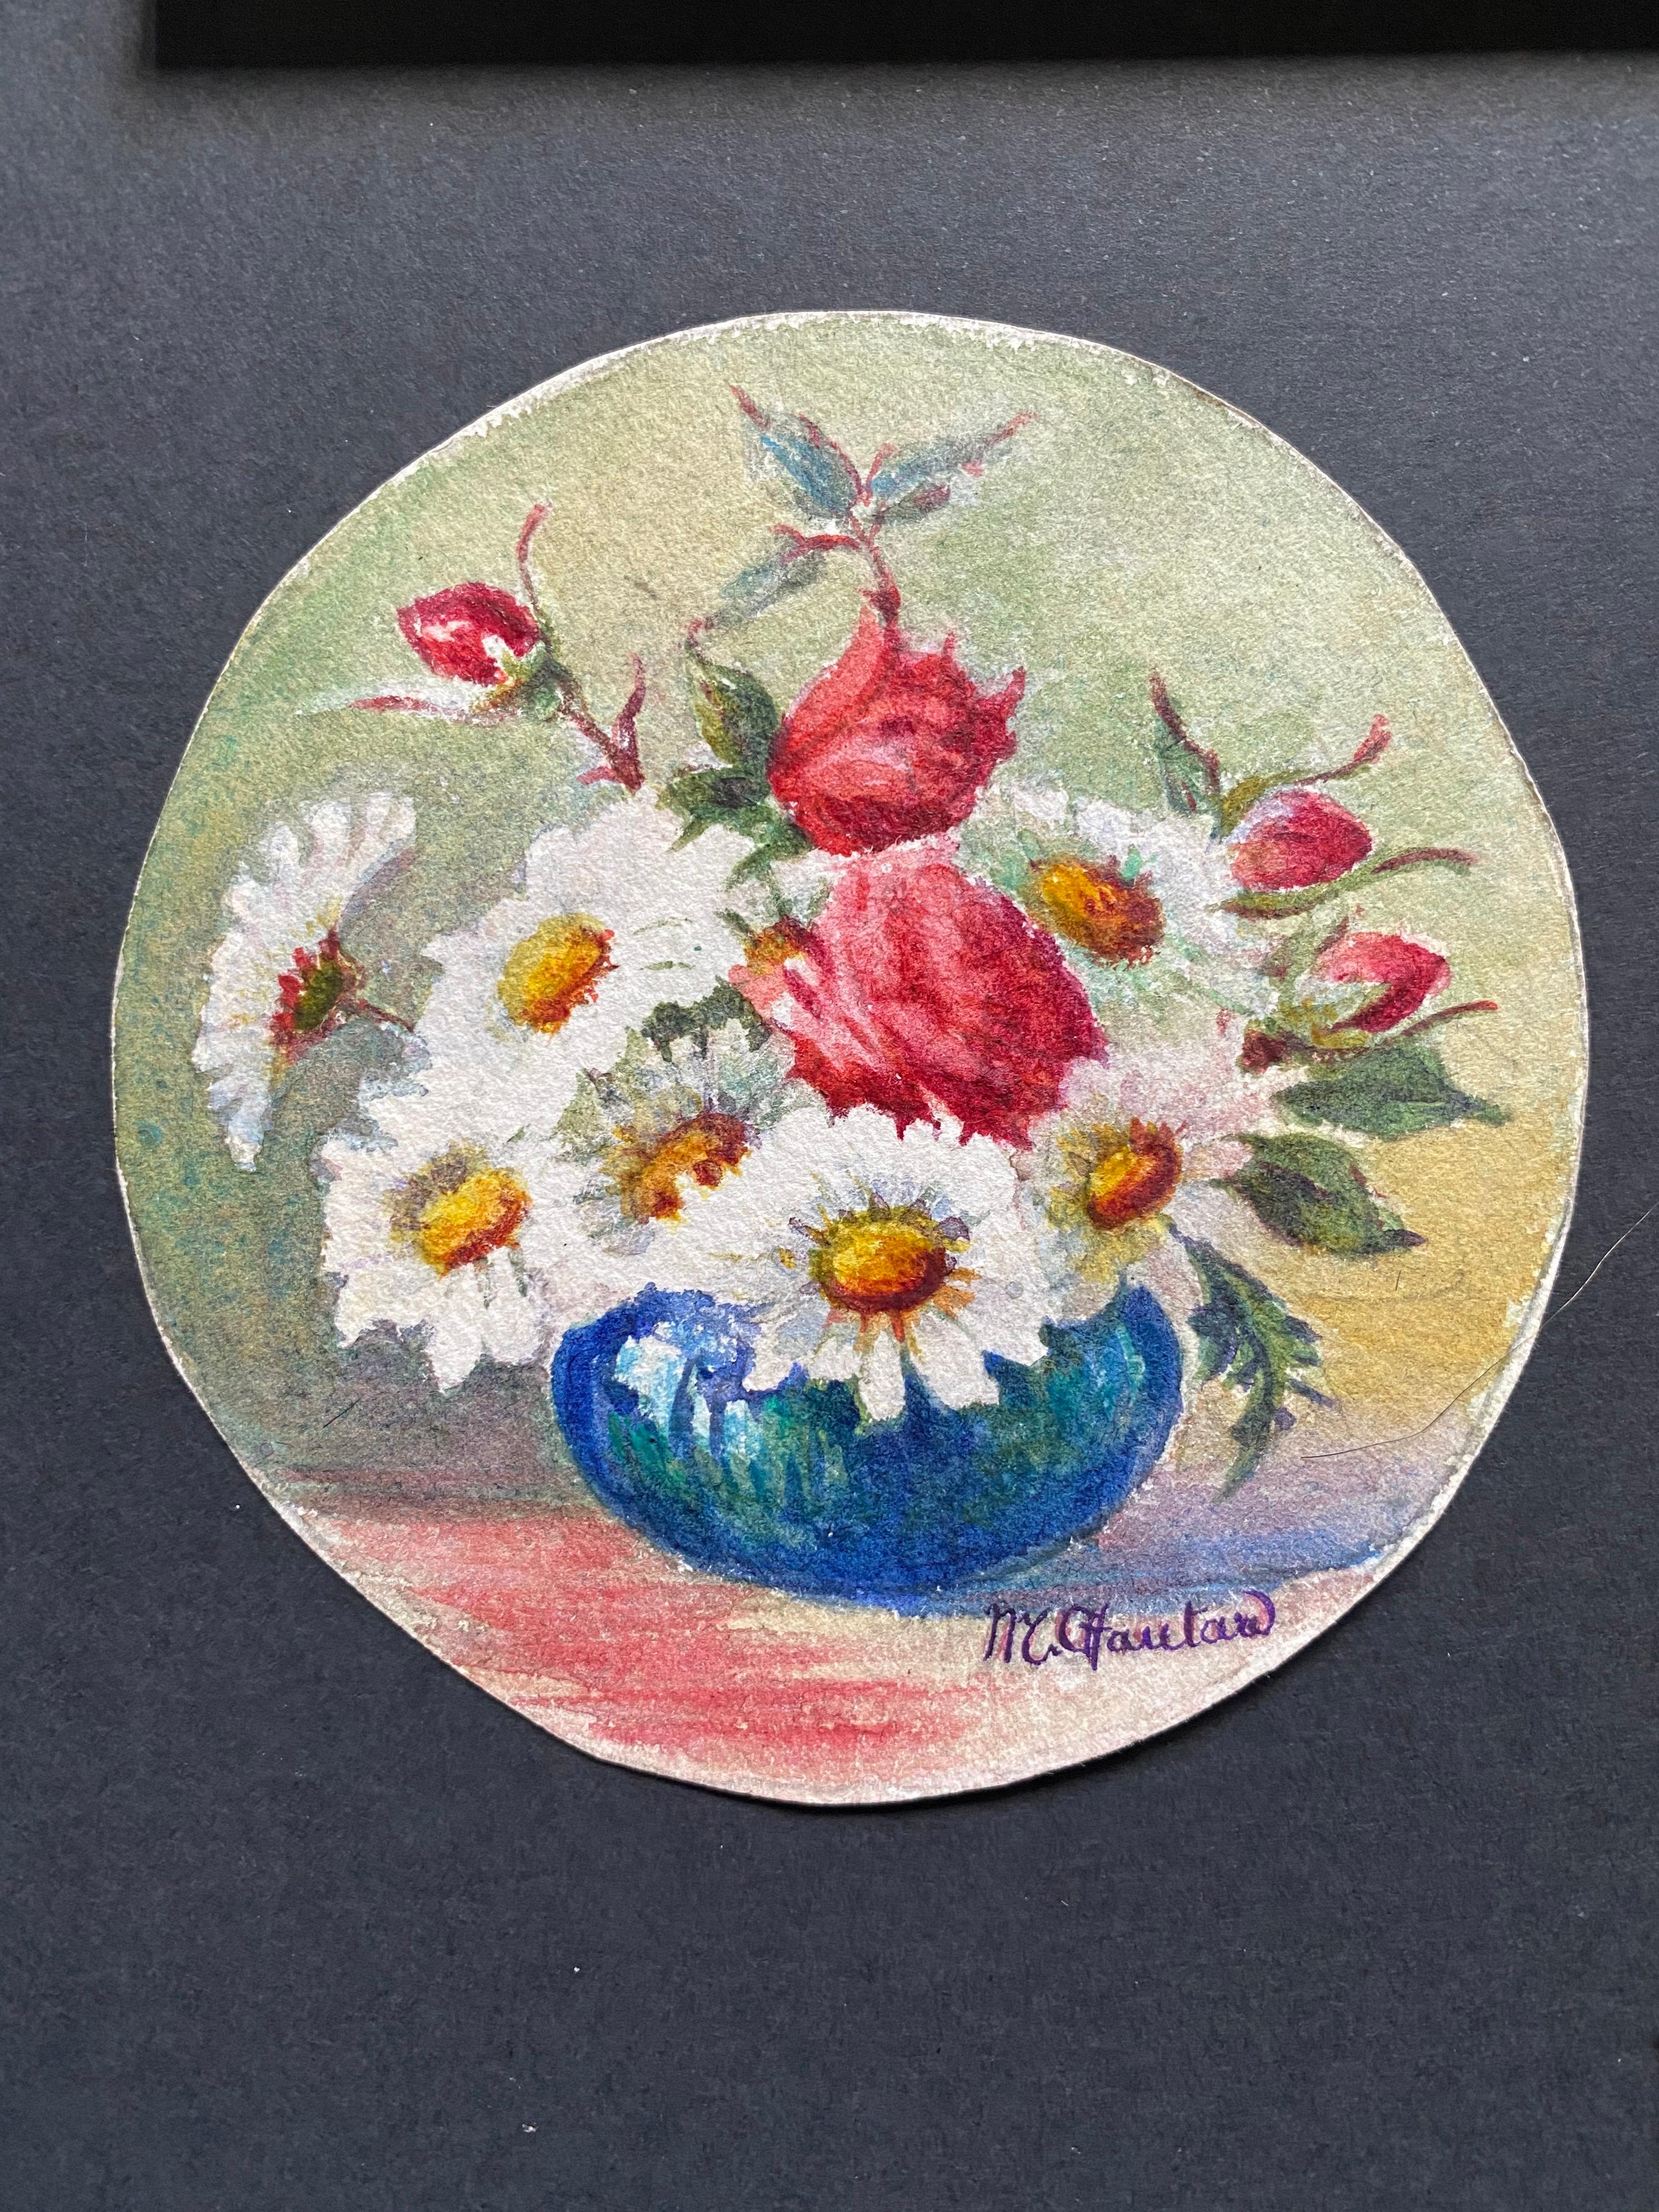 3 x  Aquarelles de fleurs impressionnistes françaises des années 1900 signées Marie Carreau - Impressionnisme Art par Marie-Amelie Chautard-Carreau